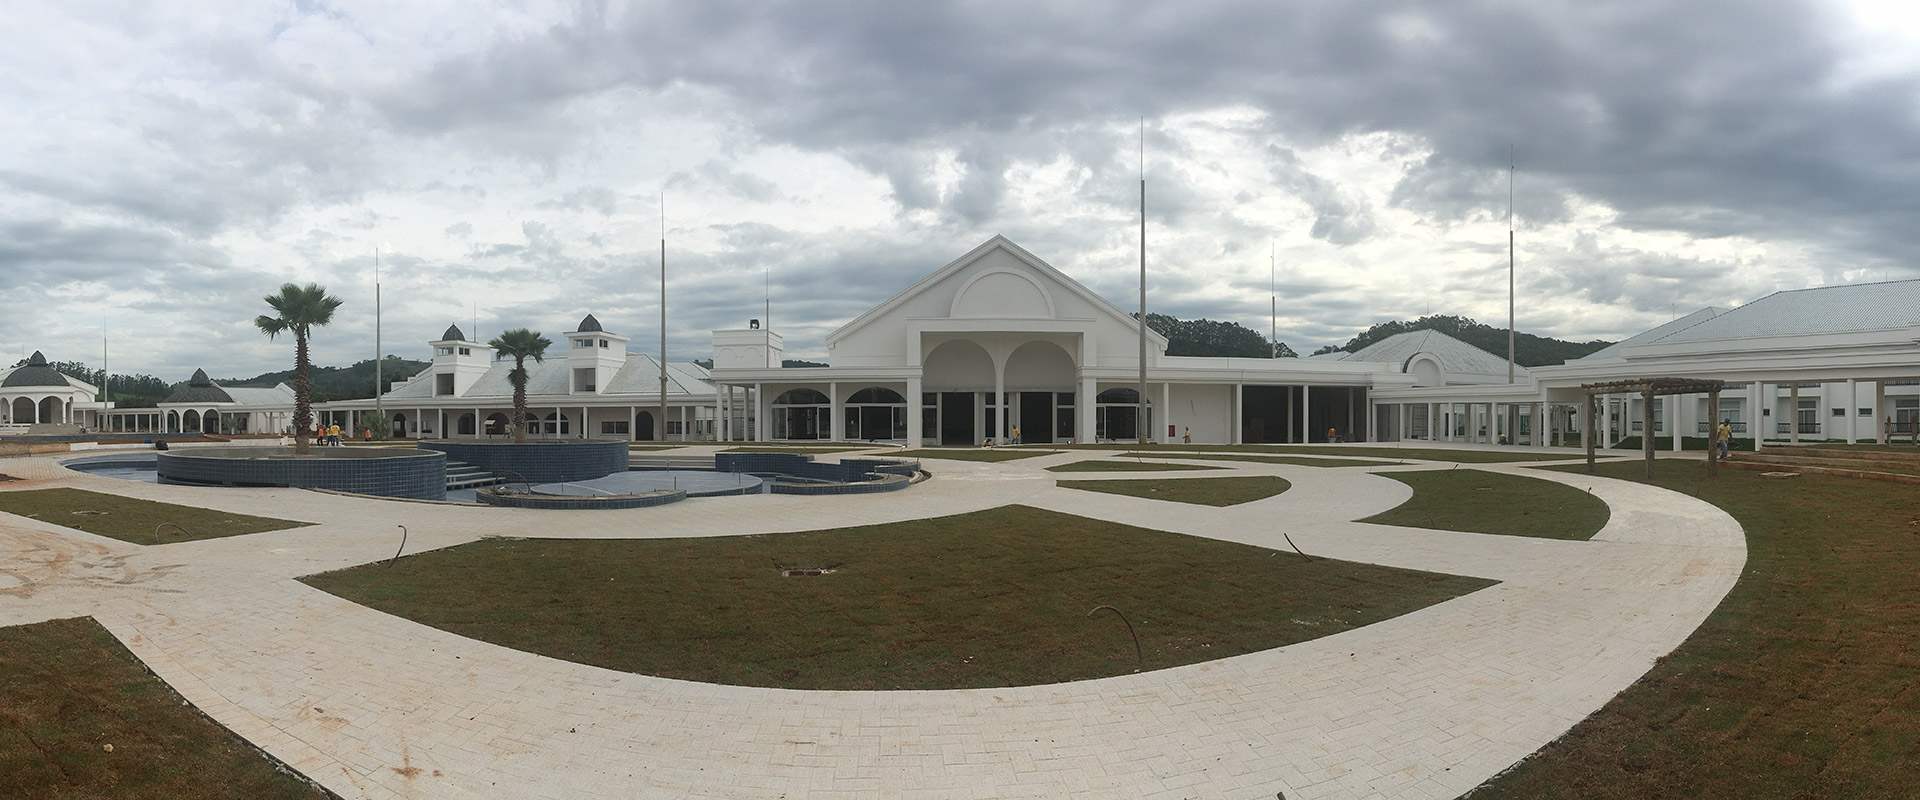 Com mais de 30 mil m² entre áreas construídas e mata atlântica, o Jurema Águas Quentes Resort, com investimento de 120 milhões, teve a MC como sua principal fornecedora de produtos para as obras de proteção e impermeabilização.